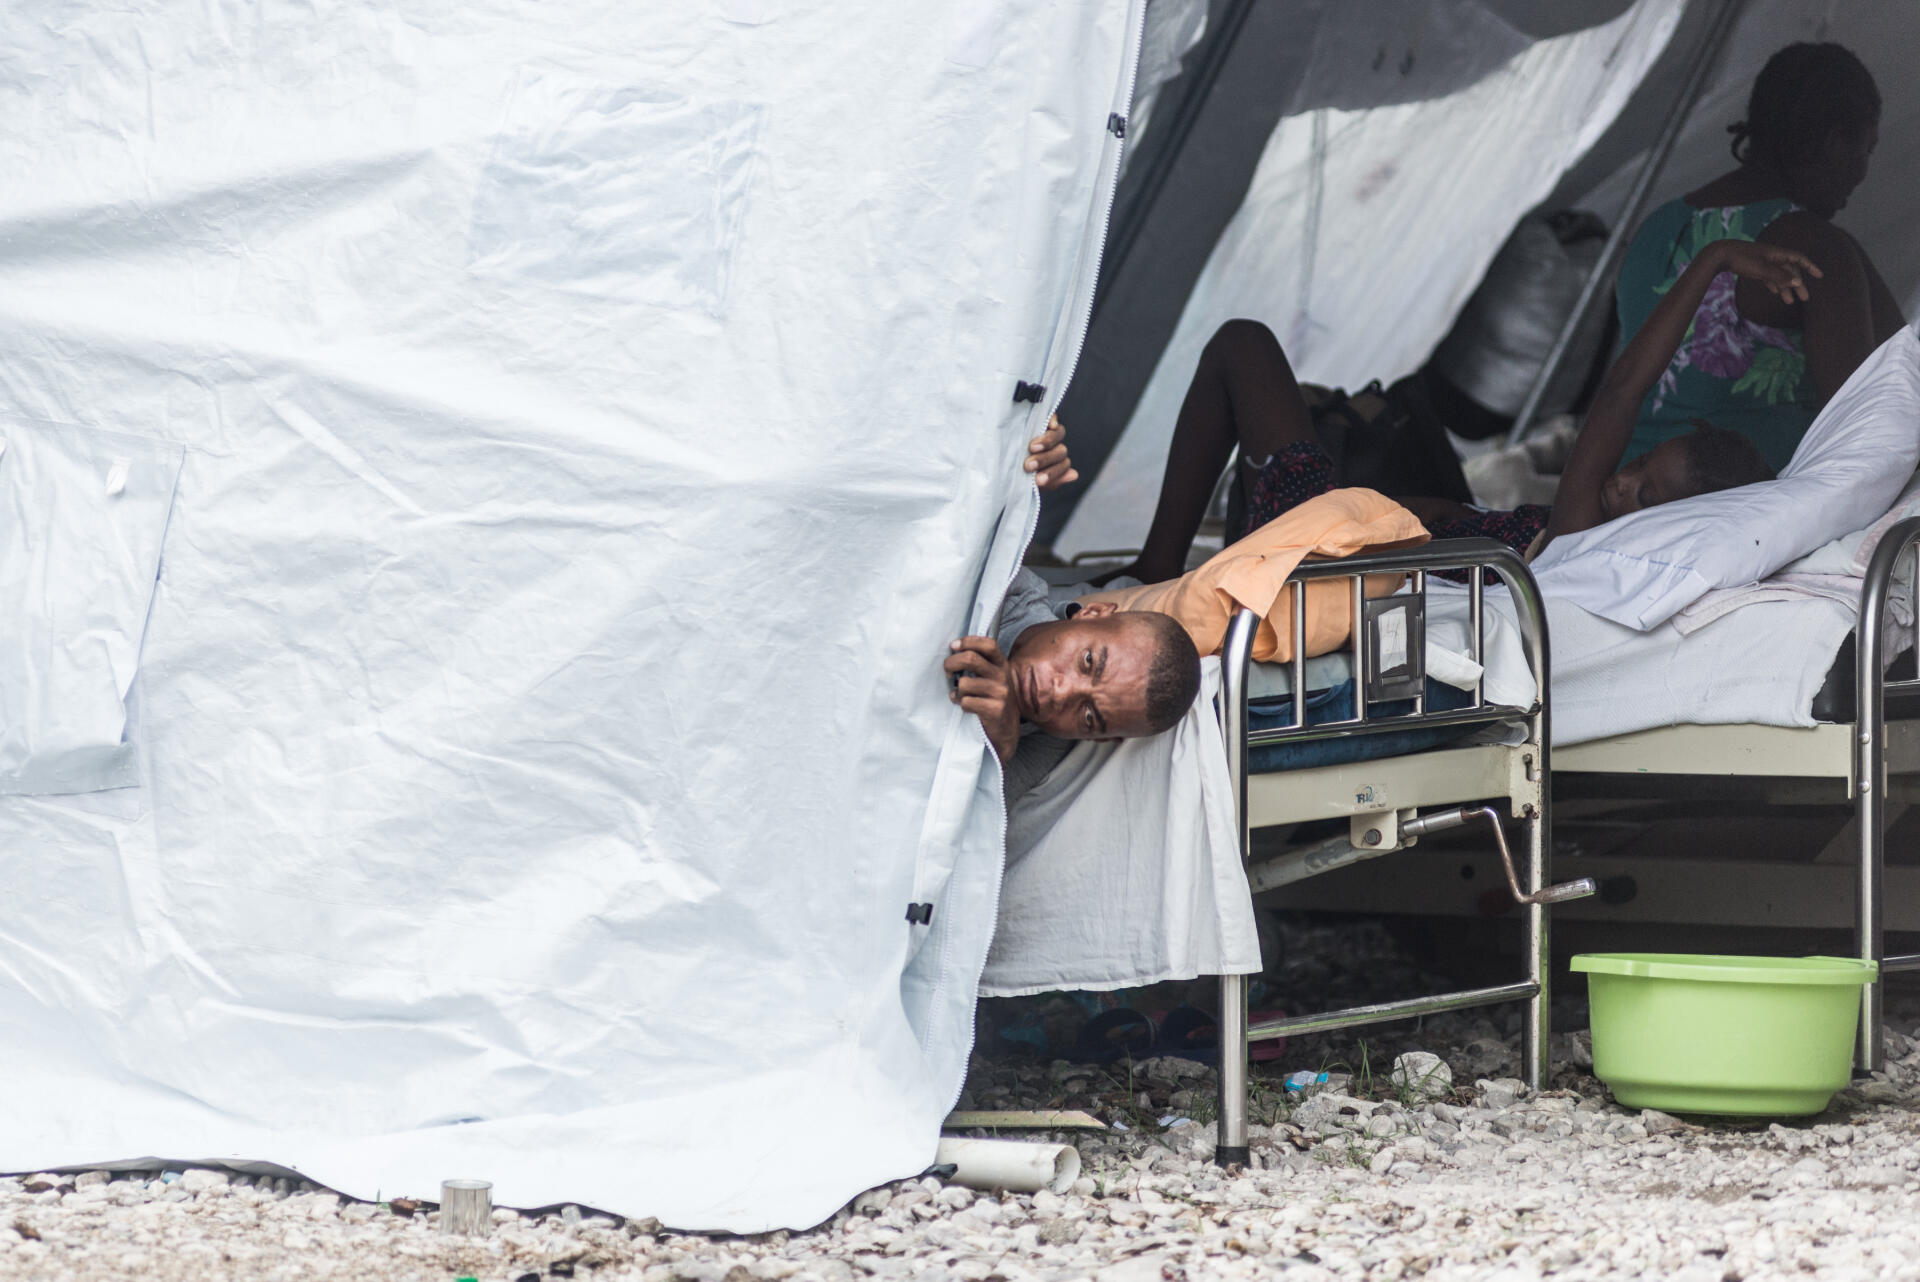 Un homme blessé lors du séisme, sous une tente dans la cour de l’hôpital de l’Immaculée-Conception des Cayes, chef-lieu du département du Sud en Haïti, le 26 août 2021.